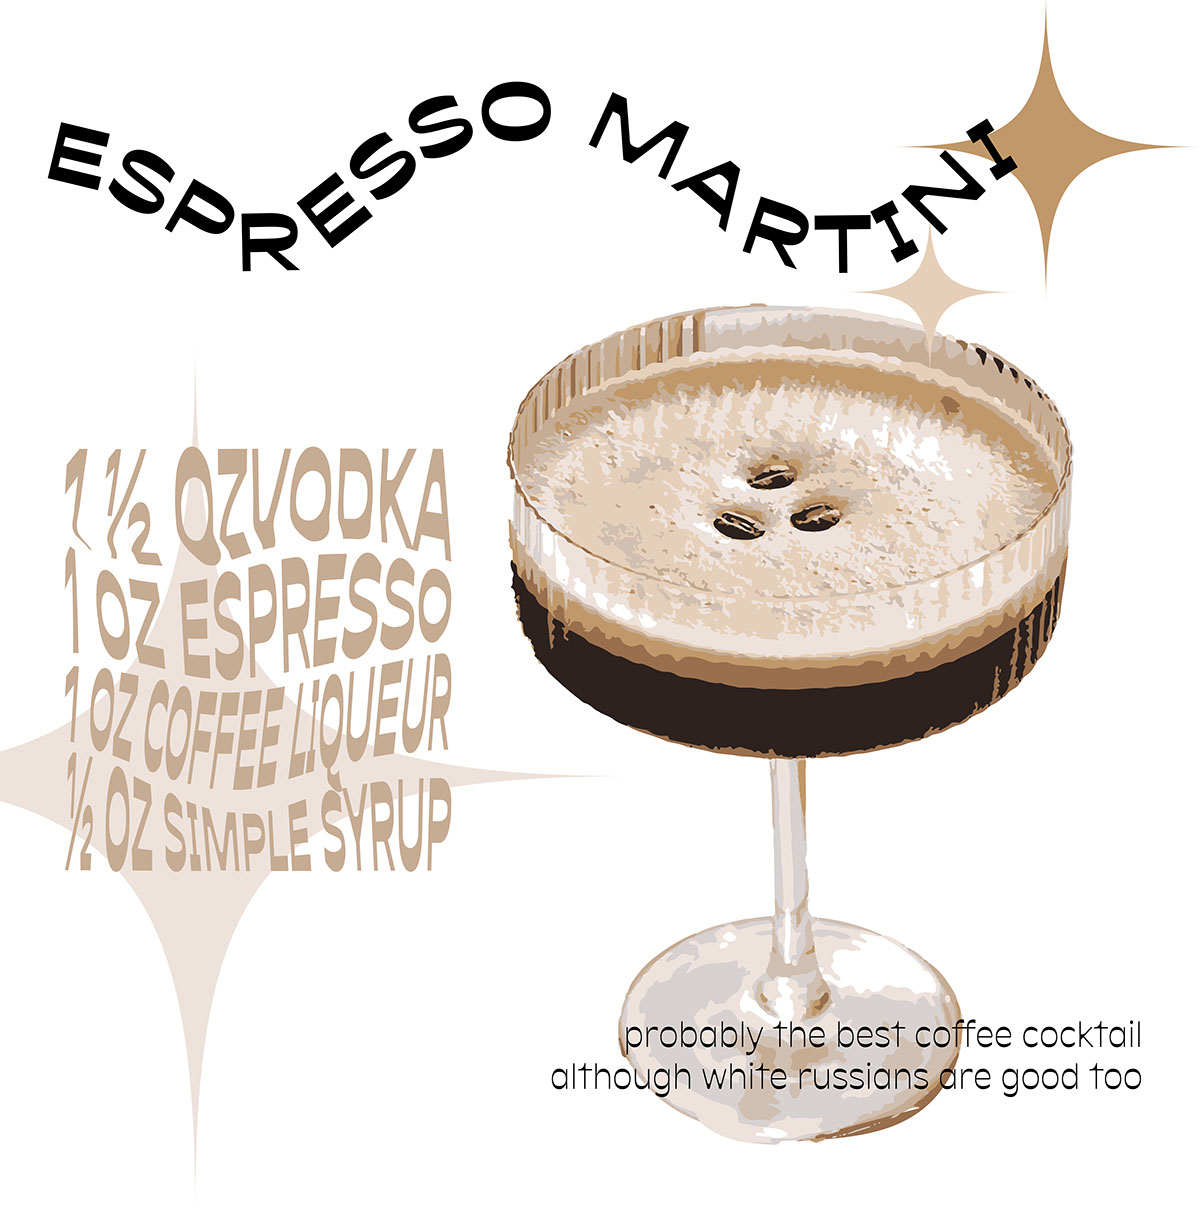 espresso martini poster rendition image